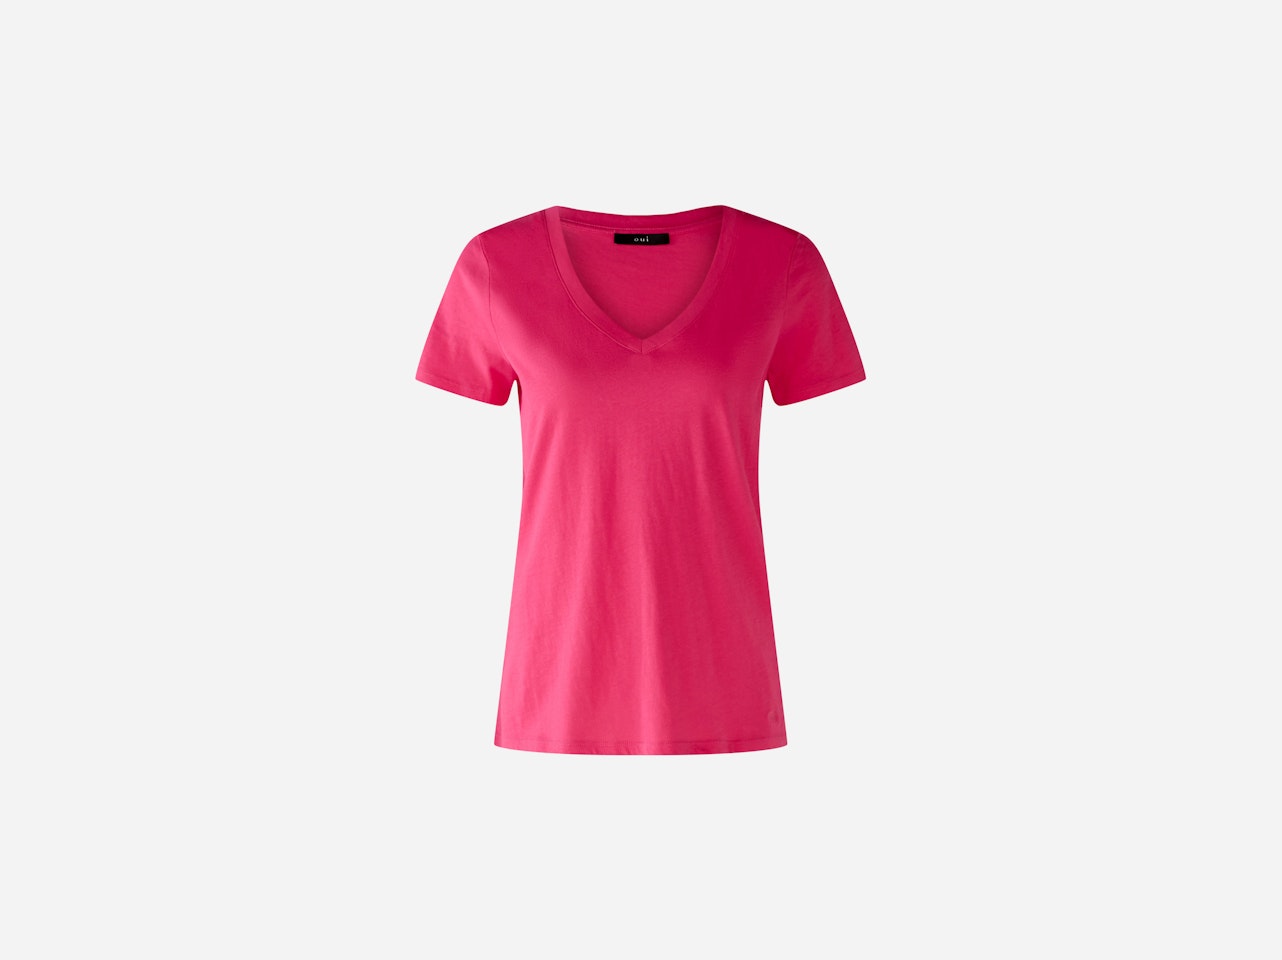 Bild 5 von CARLI T-shirt 100% organic cotton in dark pink | Oui